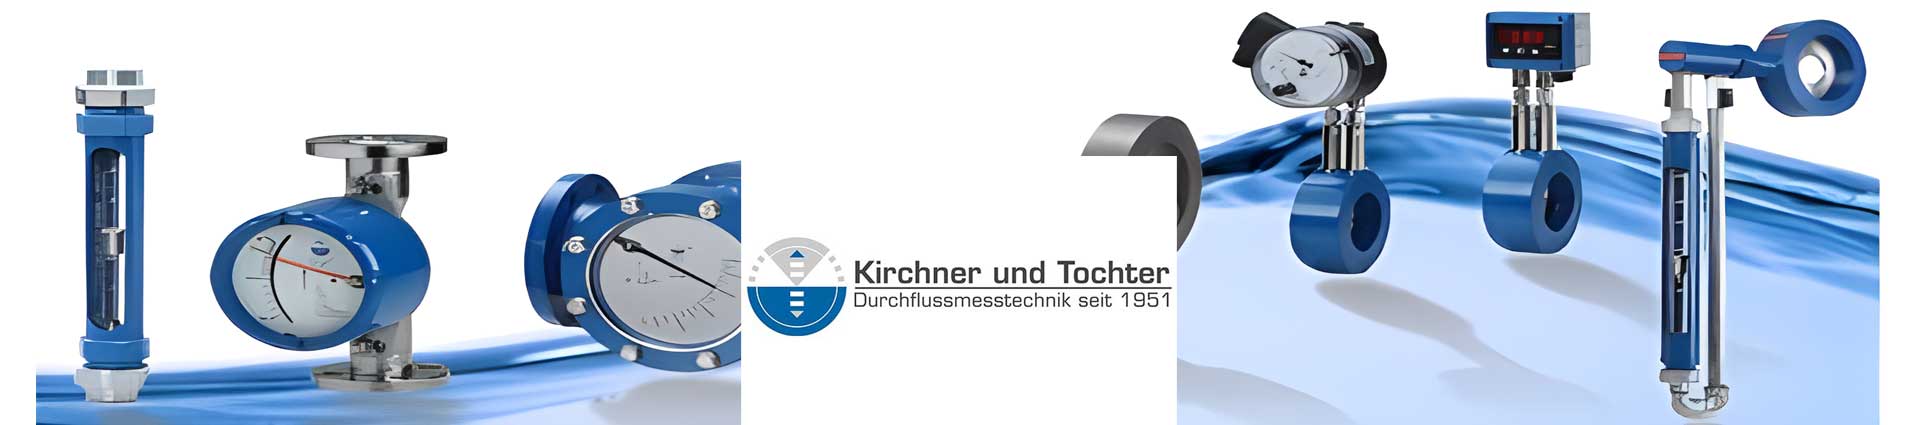 德國(guó)Kirchner und Tochter